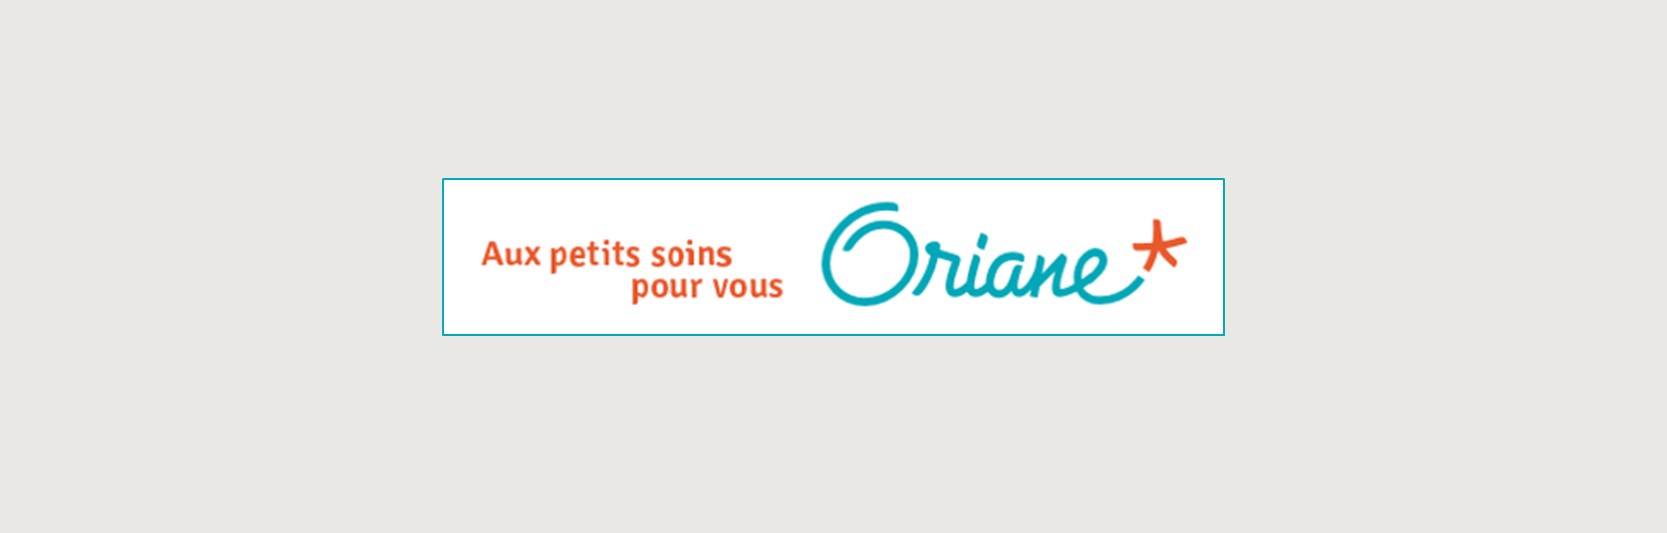 Oriane: Ein innovatives Angebot für die häusliche Pflege